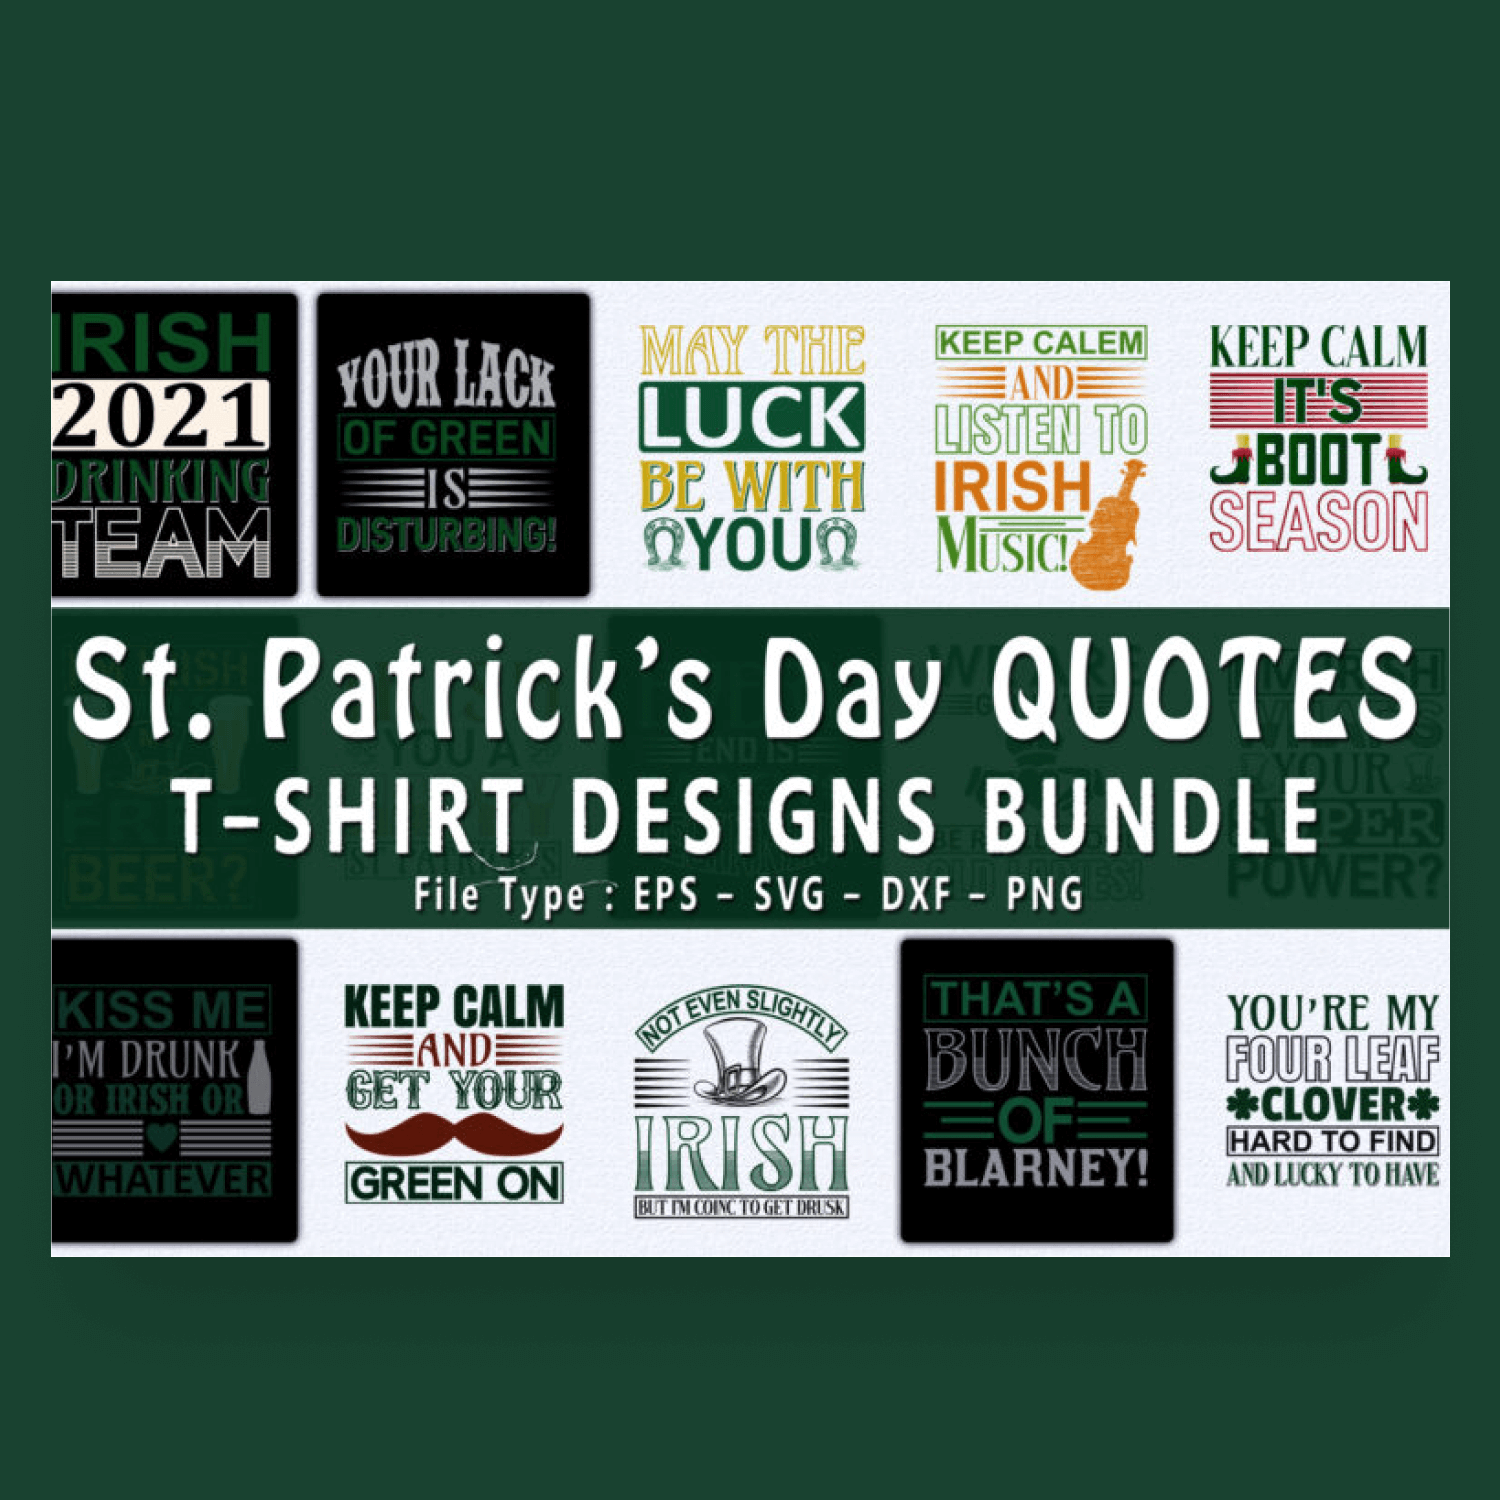 St patrick's day quotes t - shirt designs bundle.